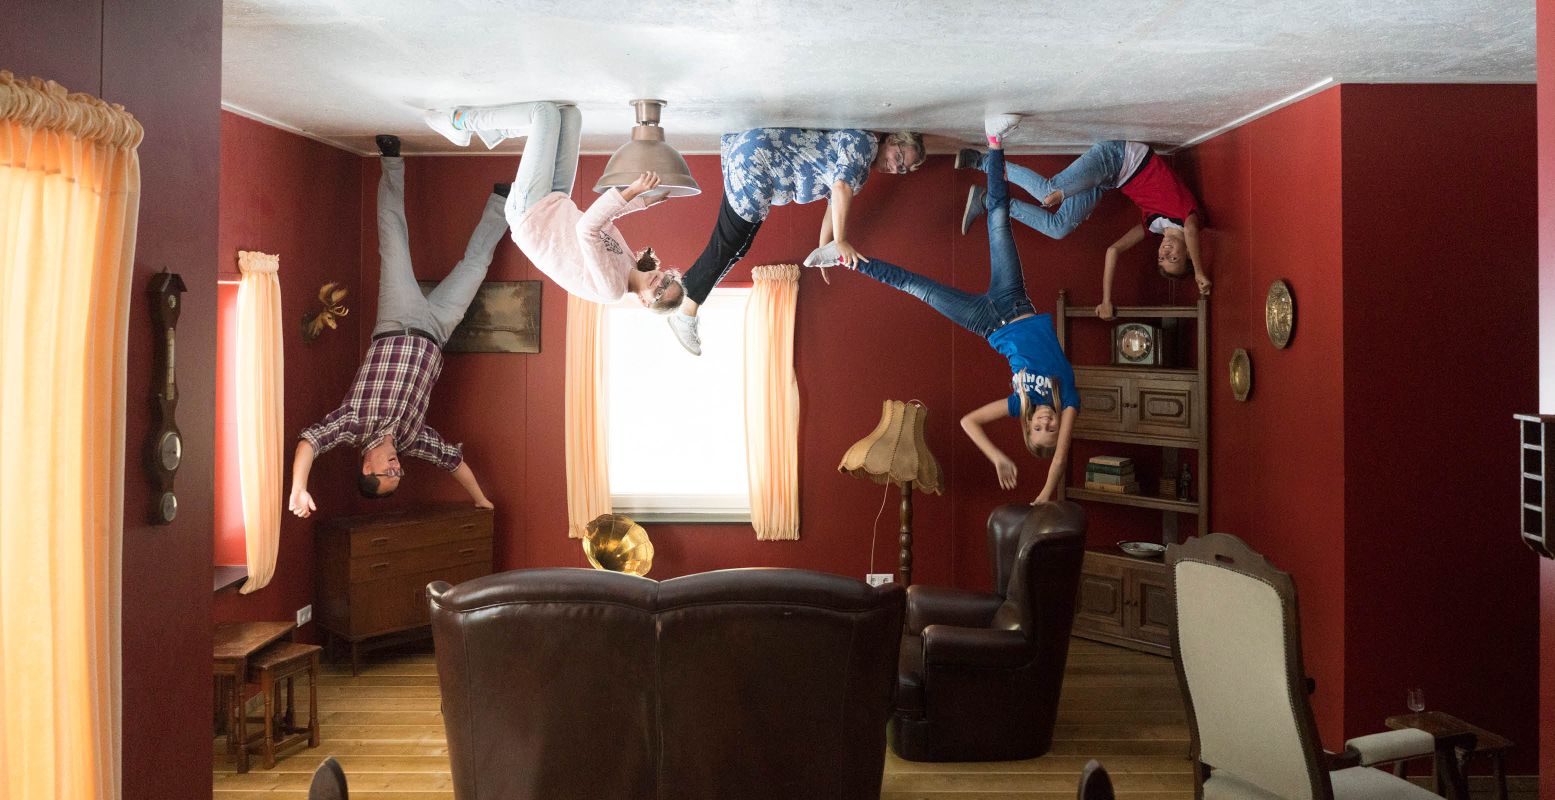 Blijf zonder moeite hangen aan het plafond. Foto: Mind Mystery